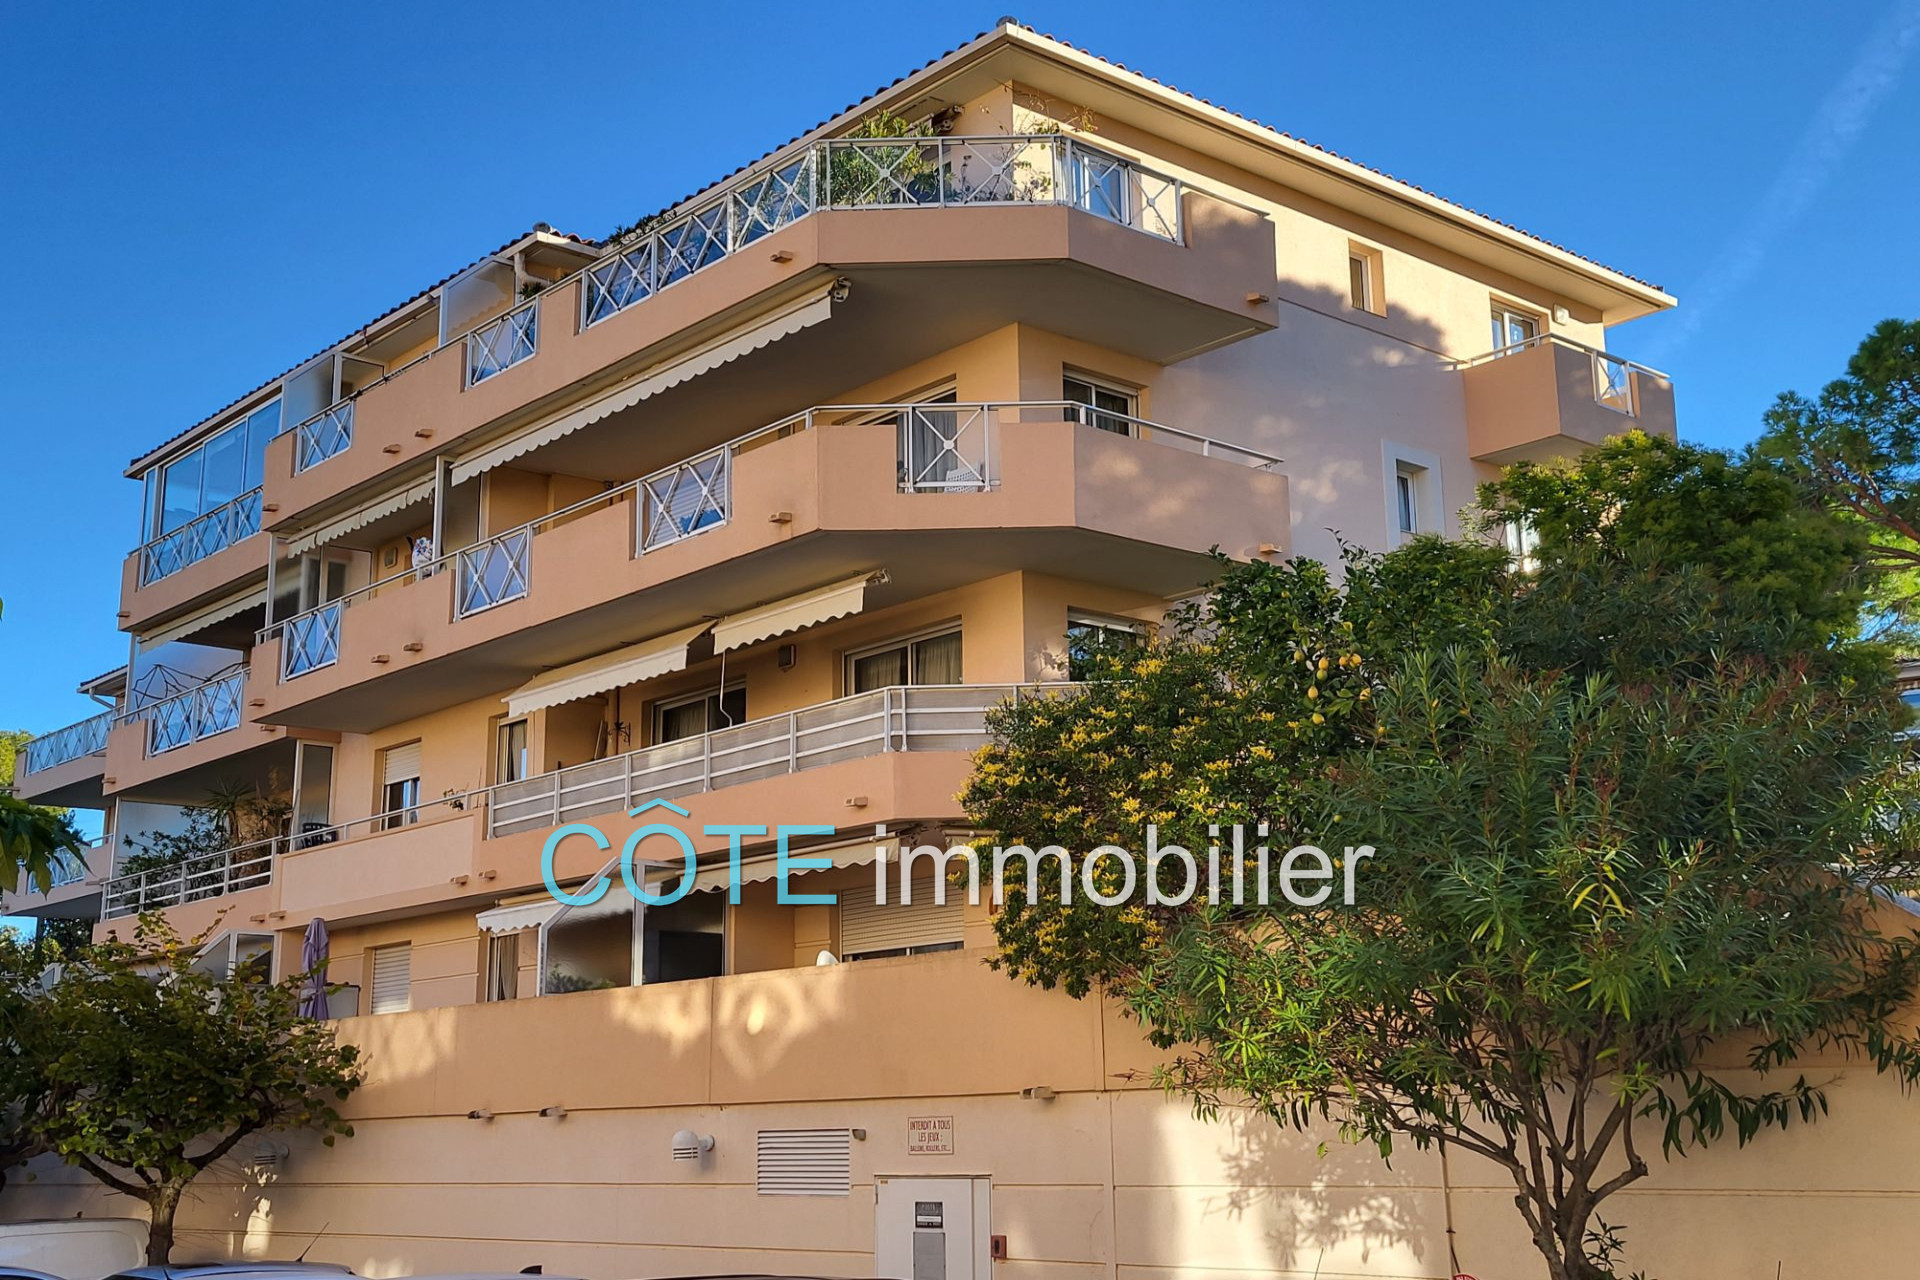 Vente Appartement 45m² à Vallauris (06220) - Côte Immobilier